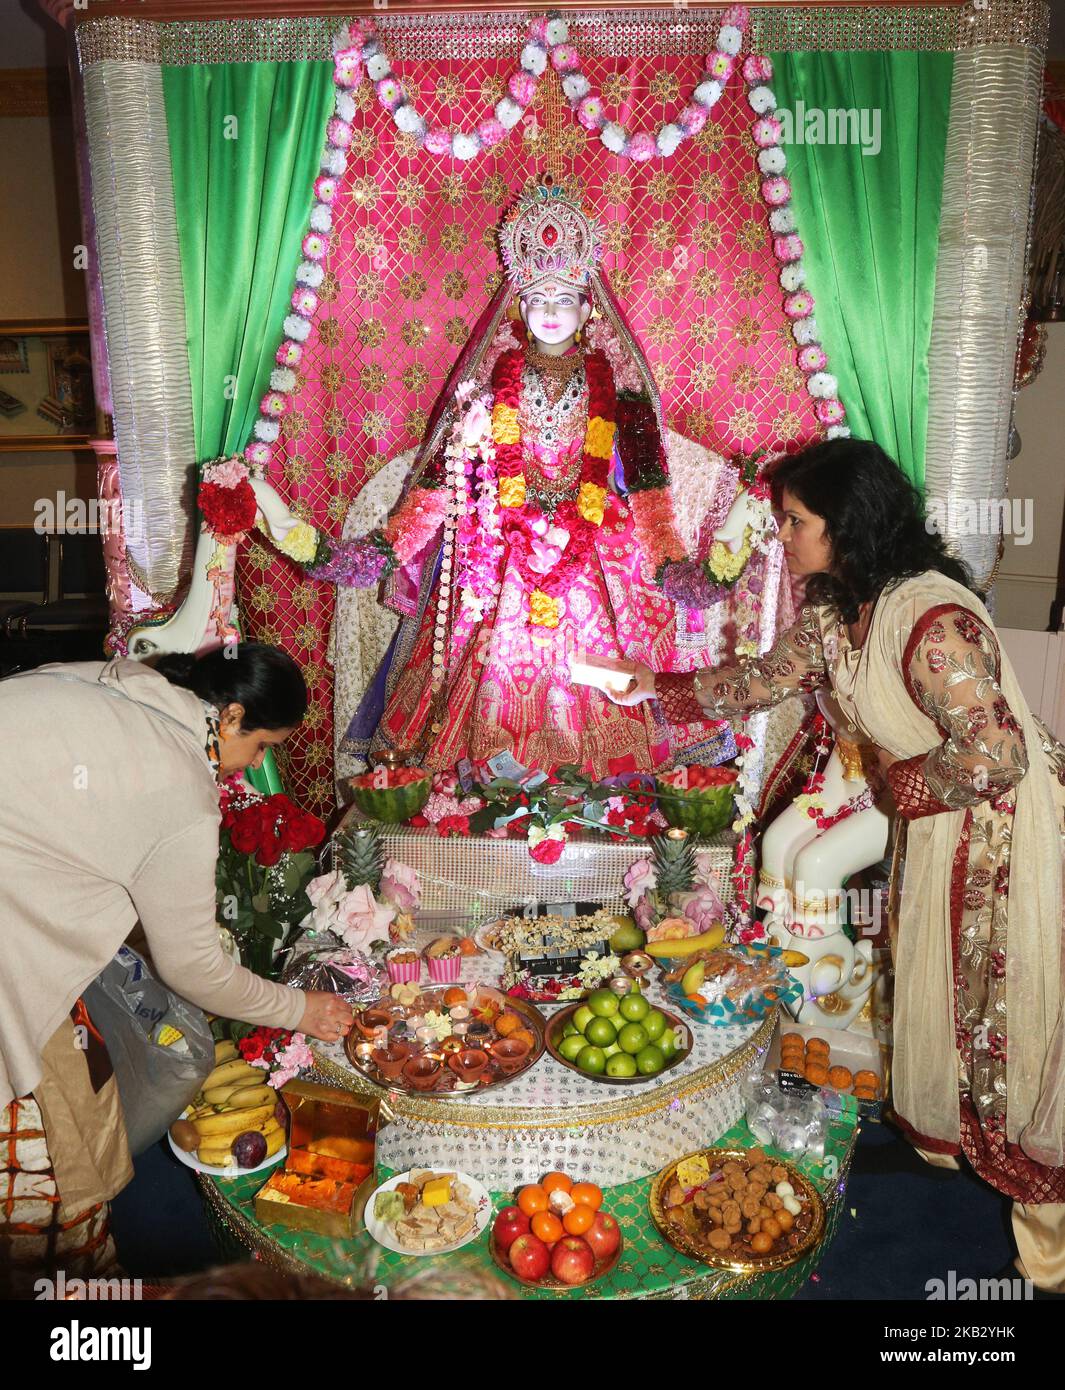 Hinduistische Anhänger führen Lakshmi puja während des Festivals von Diwali (Deepawali) in einem Hindu-Tempel in Toronto, Ontario, Kanada am 7. November 2018 auf. Lakshmi (Laxmi) ist die hinduistische Göttin des Reichtums und Wohlstands. (Foto von Creative Touch Imaging Ltd./NurPhoto) Stockfoto